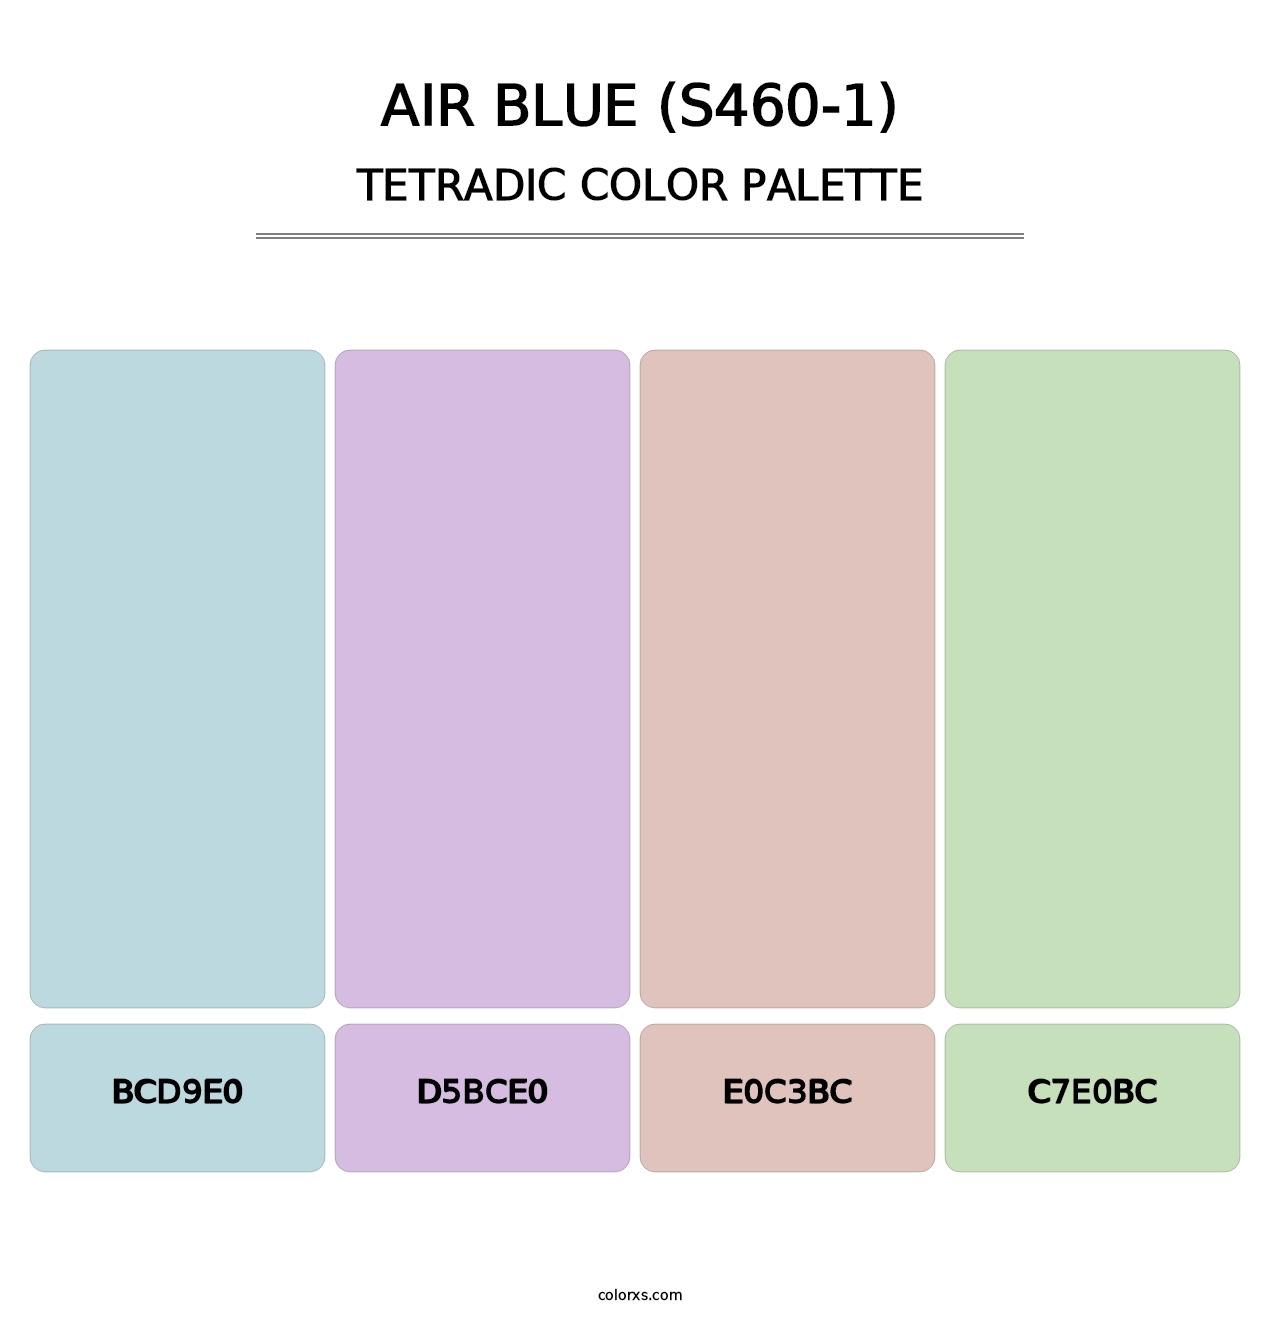 Air Blue (S460-1) - Tetradic Color Palette